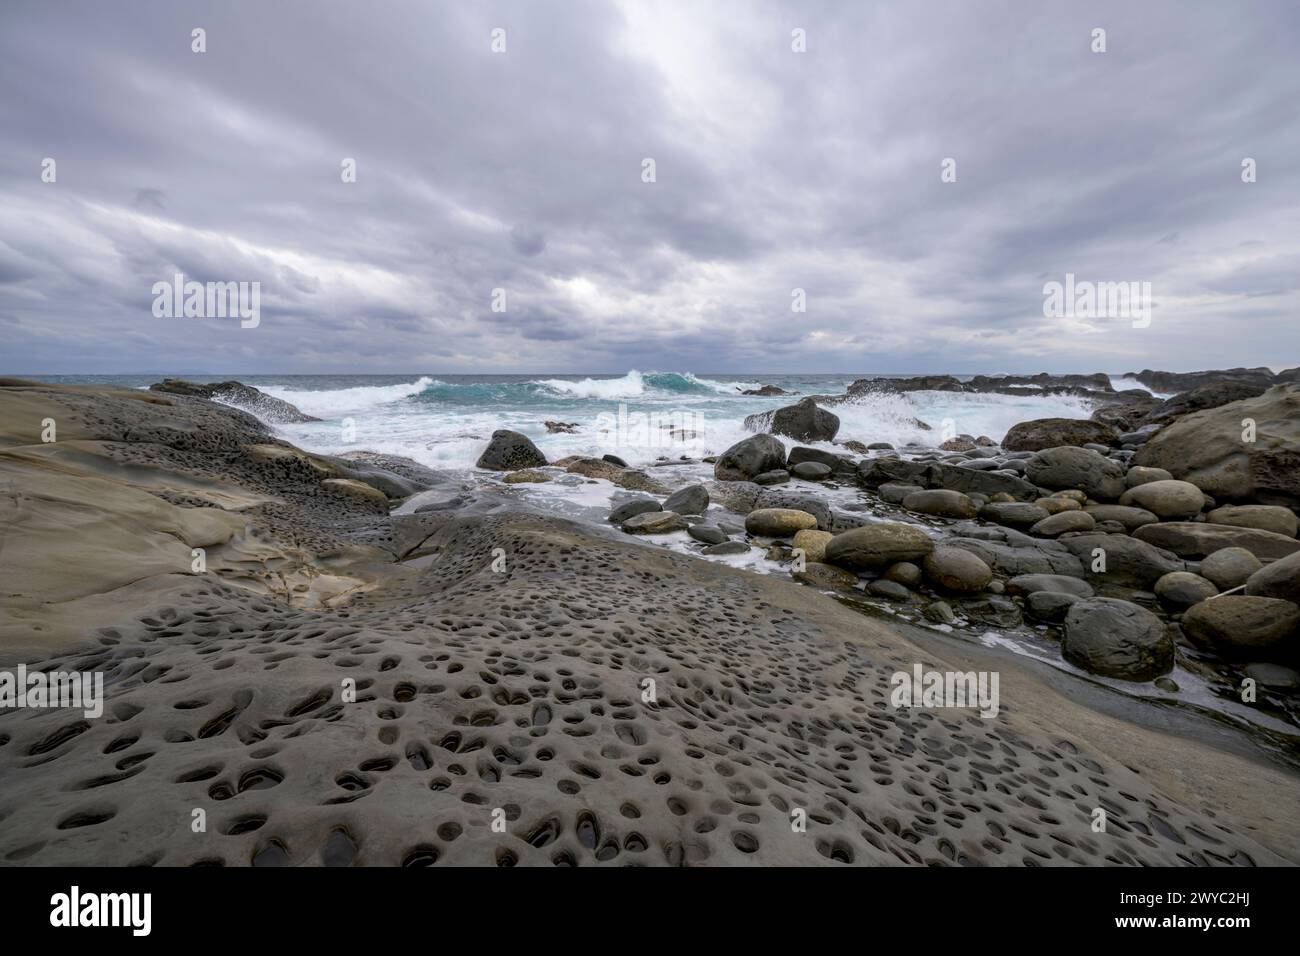 Una giornata ricoperta su una costa rocciosa che mostra schemi unici di fori erosivi con onde aspre sullo sfondo Foto Stock